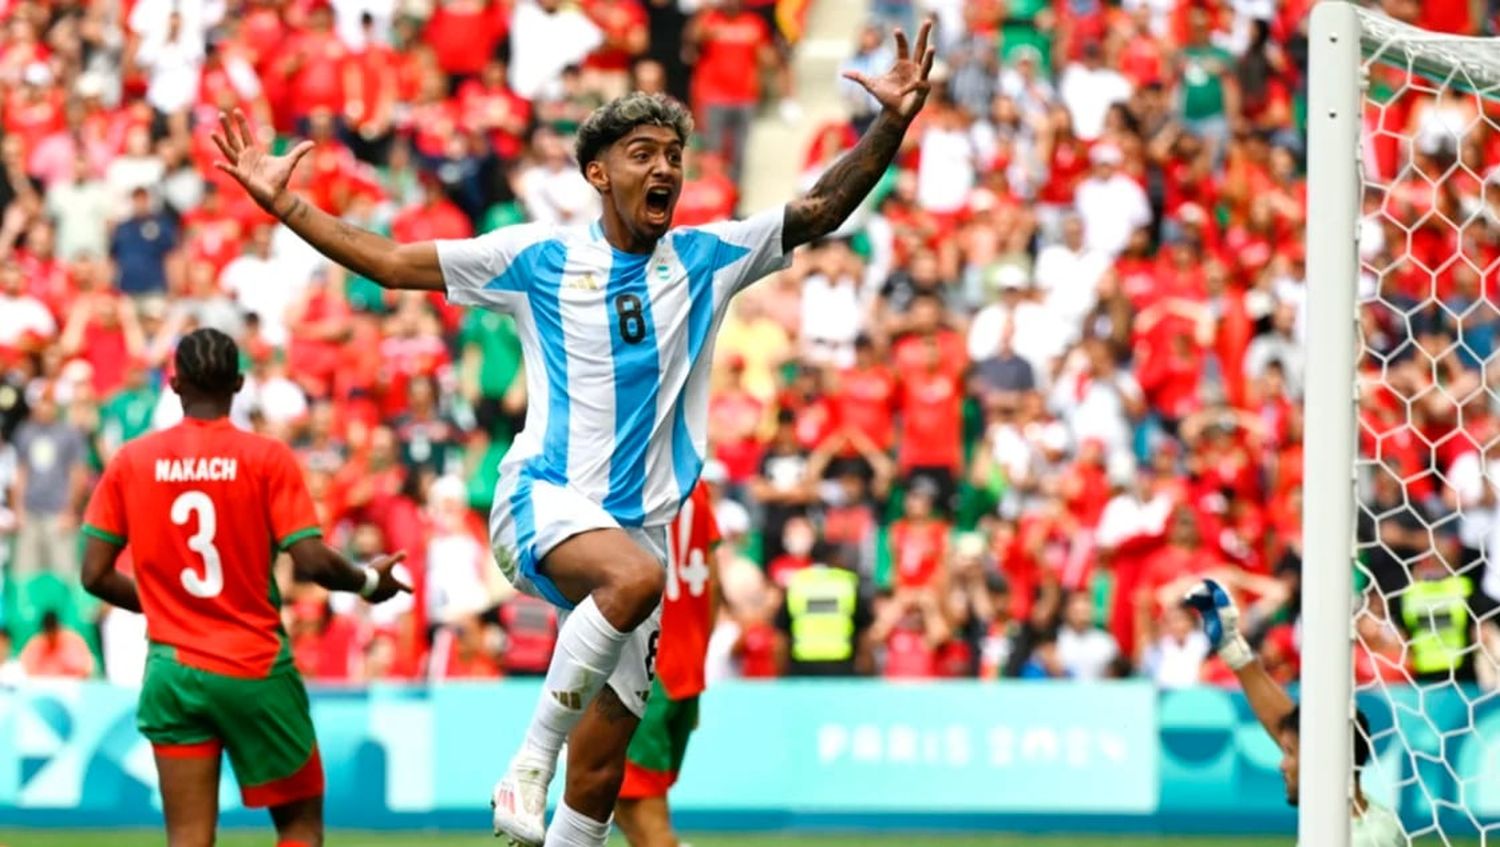 Finalmente, Argentina perdió ante Marruecos en un partido insólito